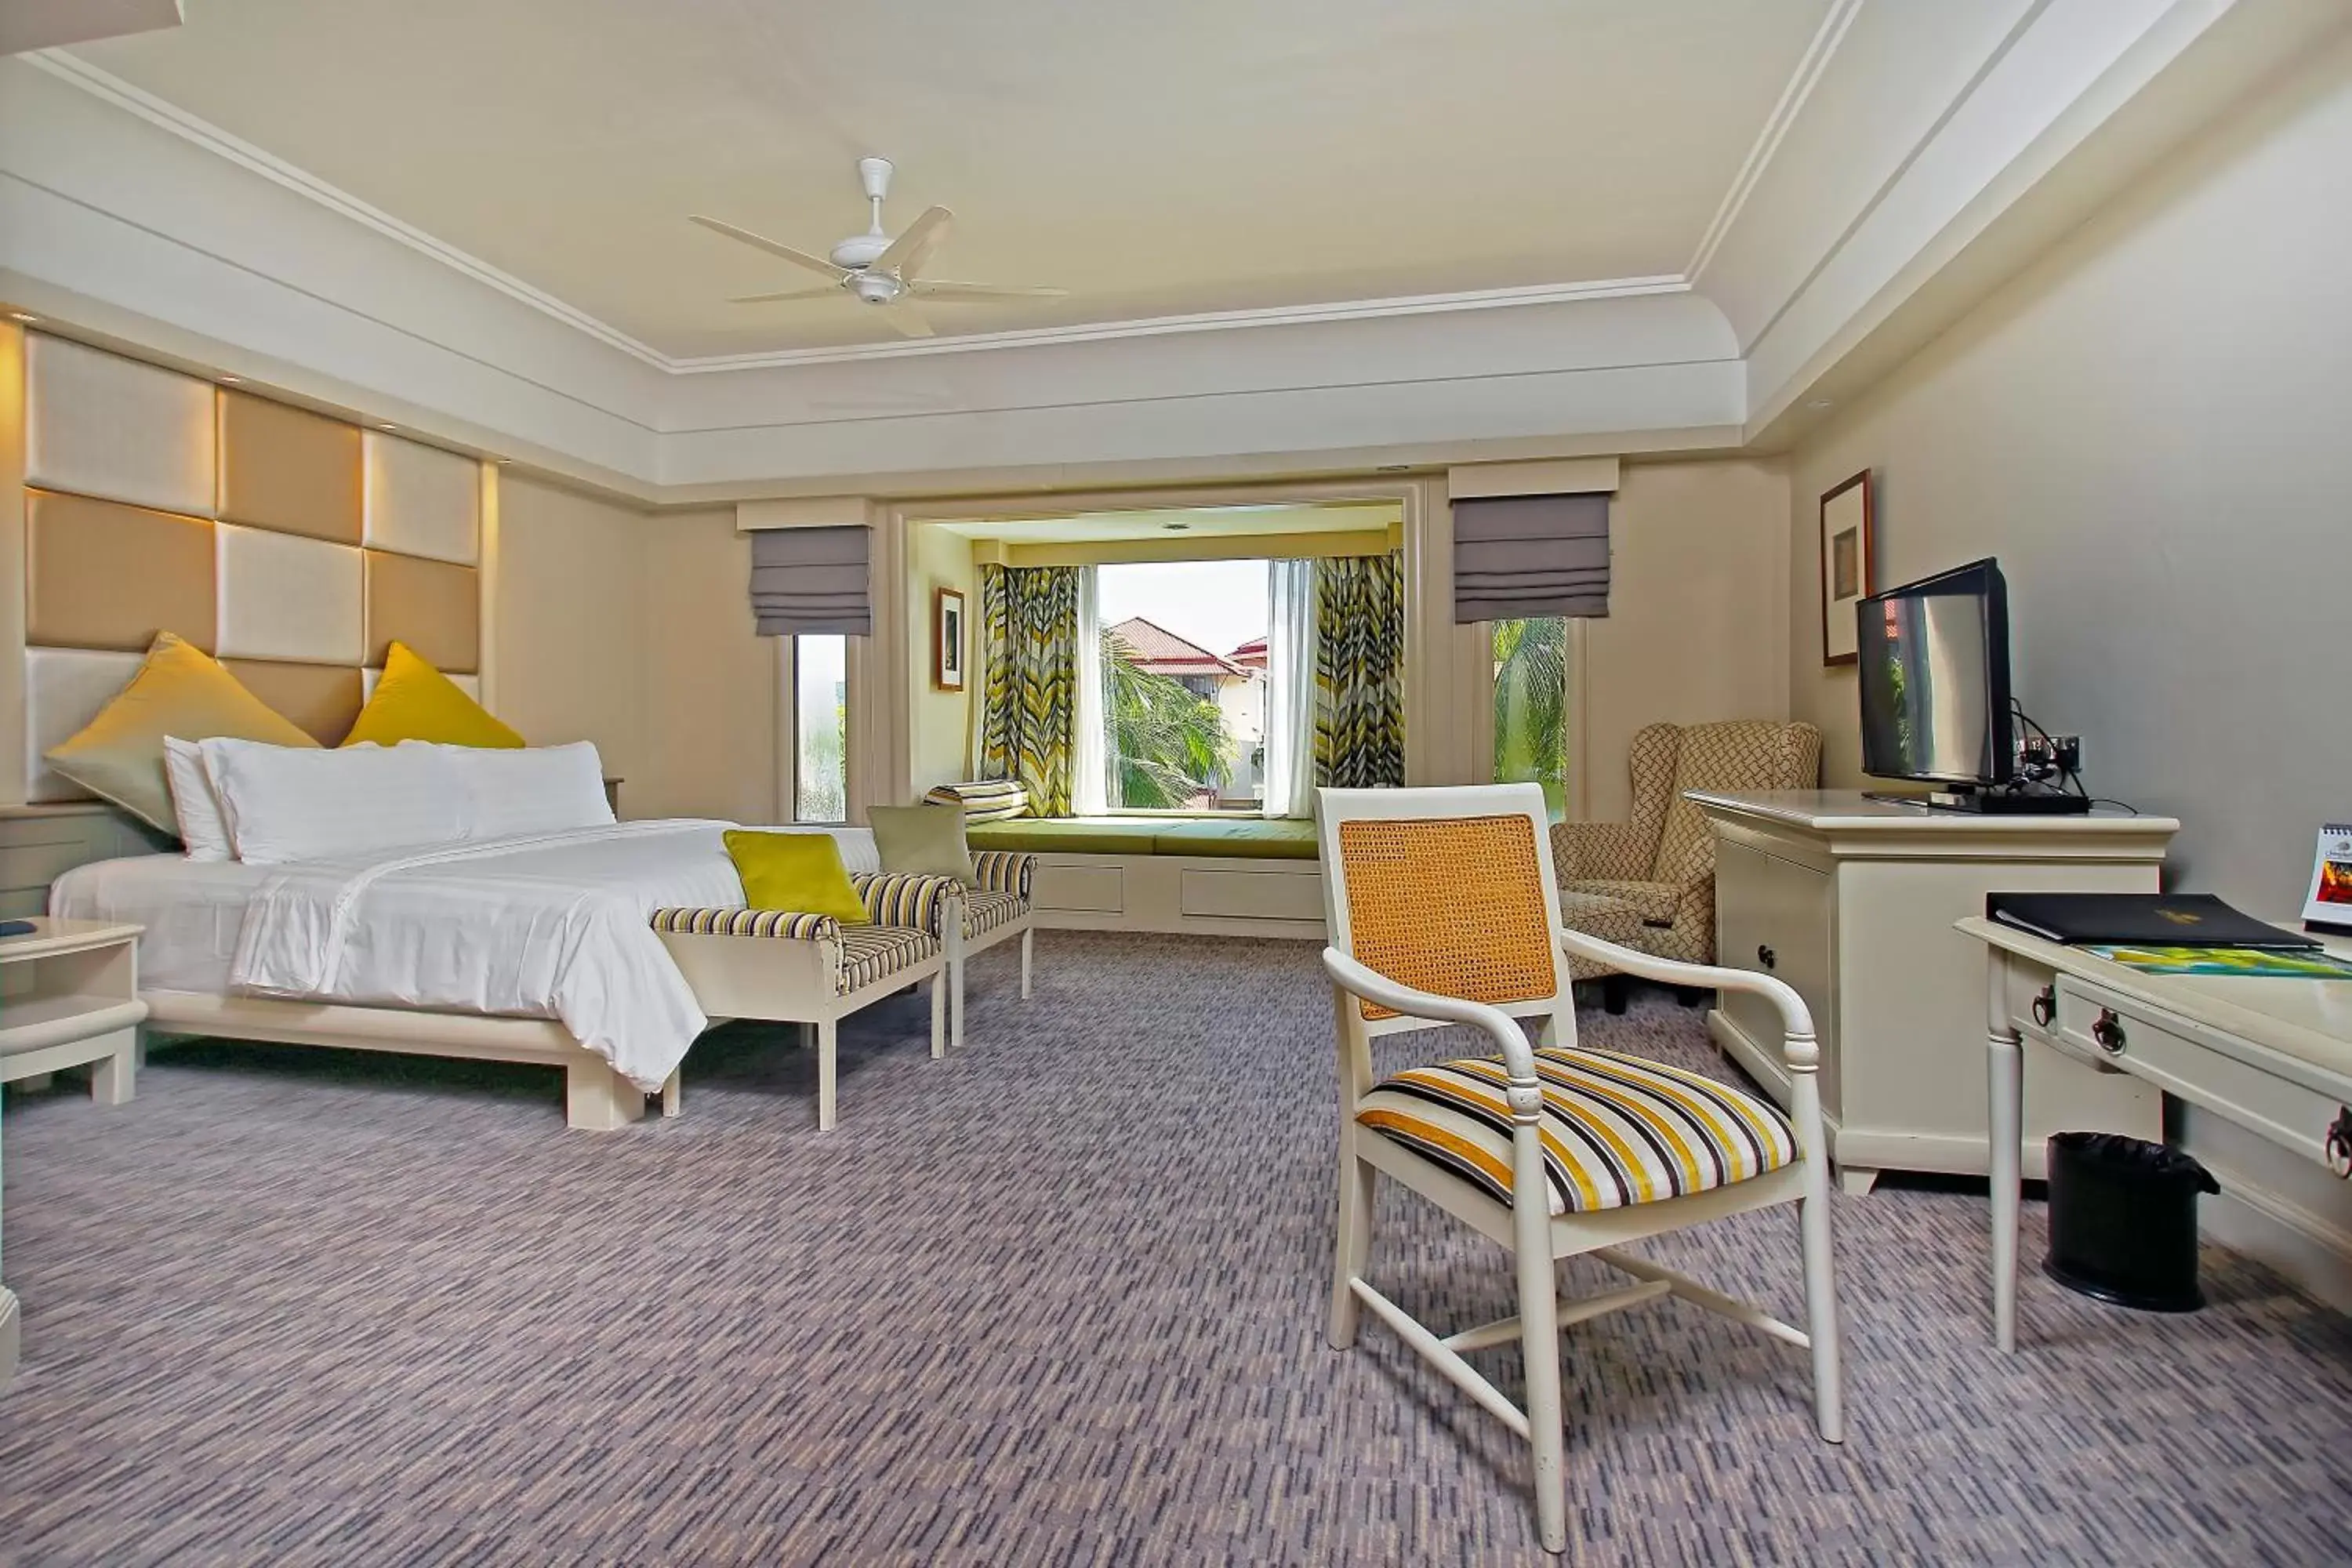 Bedroom in The Magellan Sutera Resort